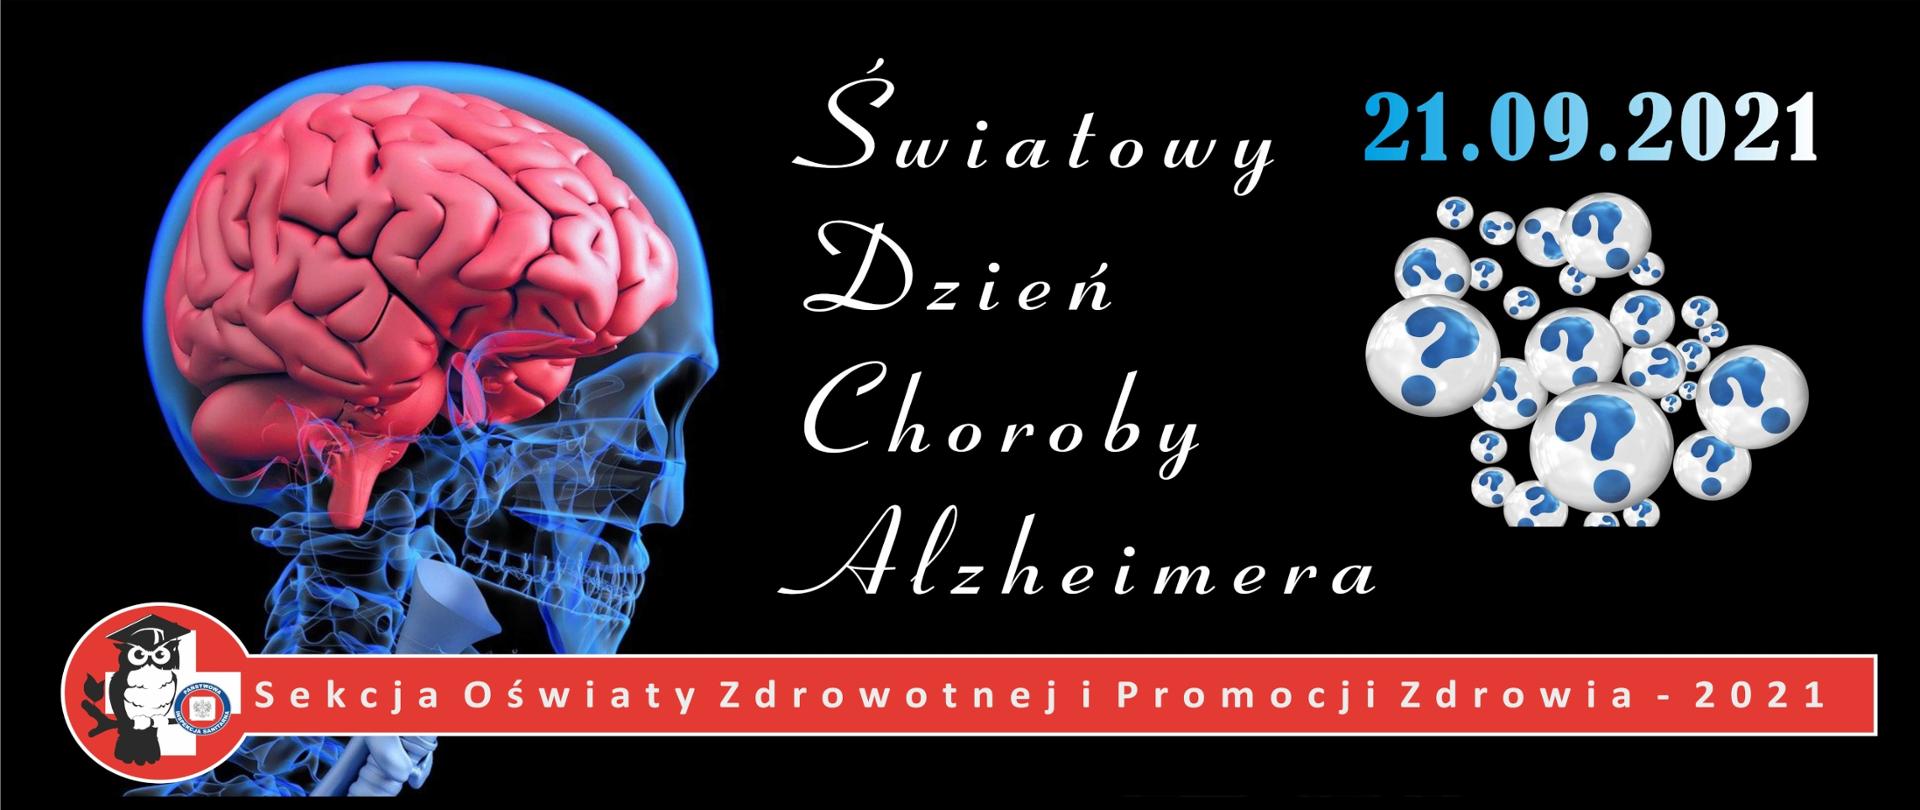 Światowy Dzień Choroby Alzheimera (pixabay.com / Gerd Altmann)